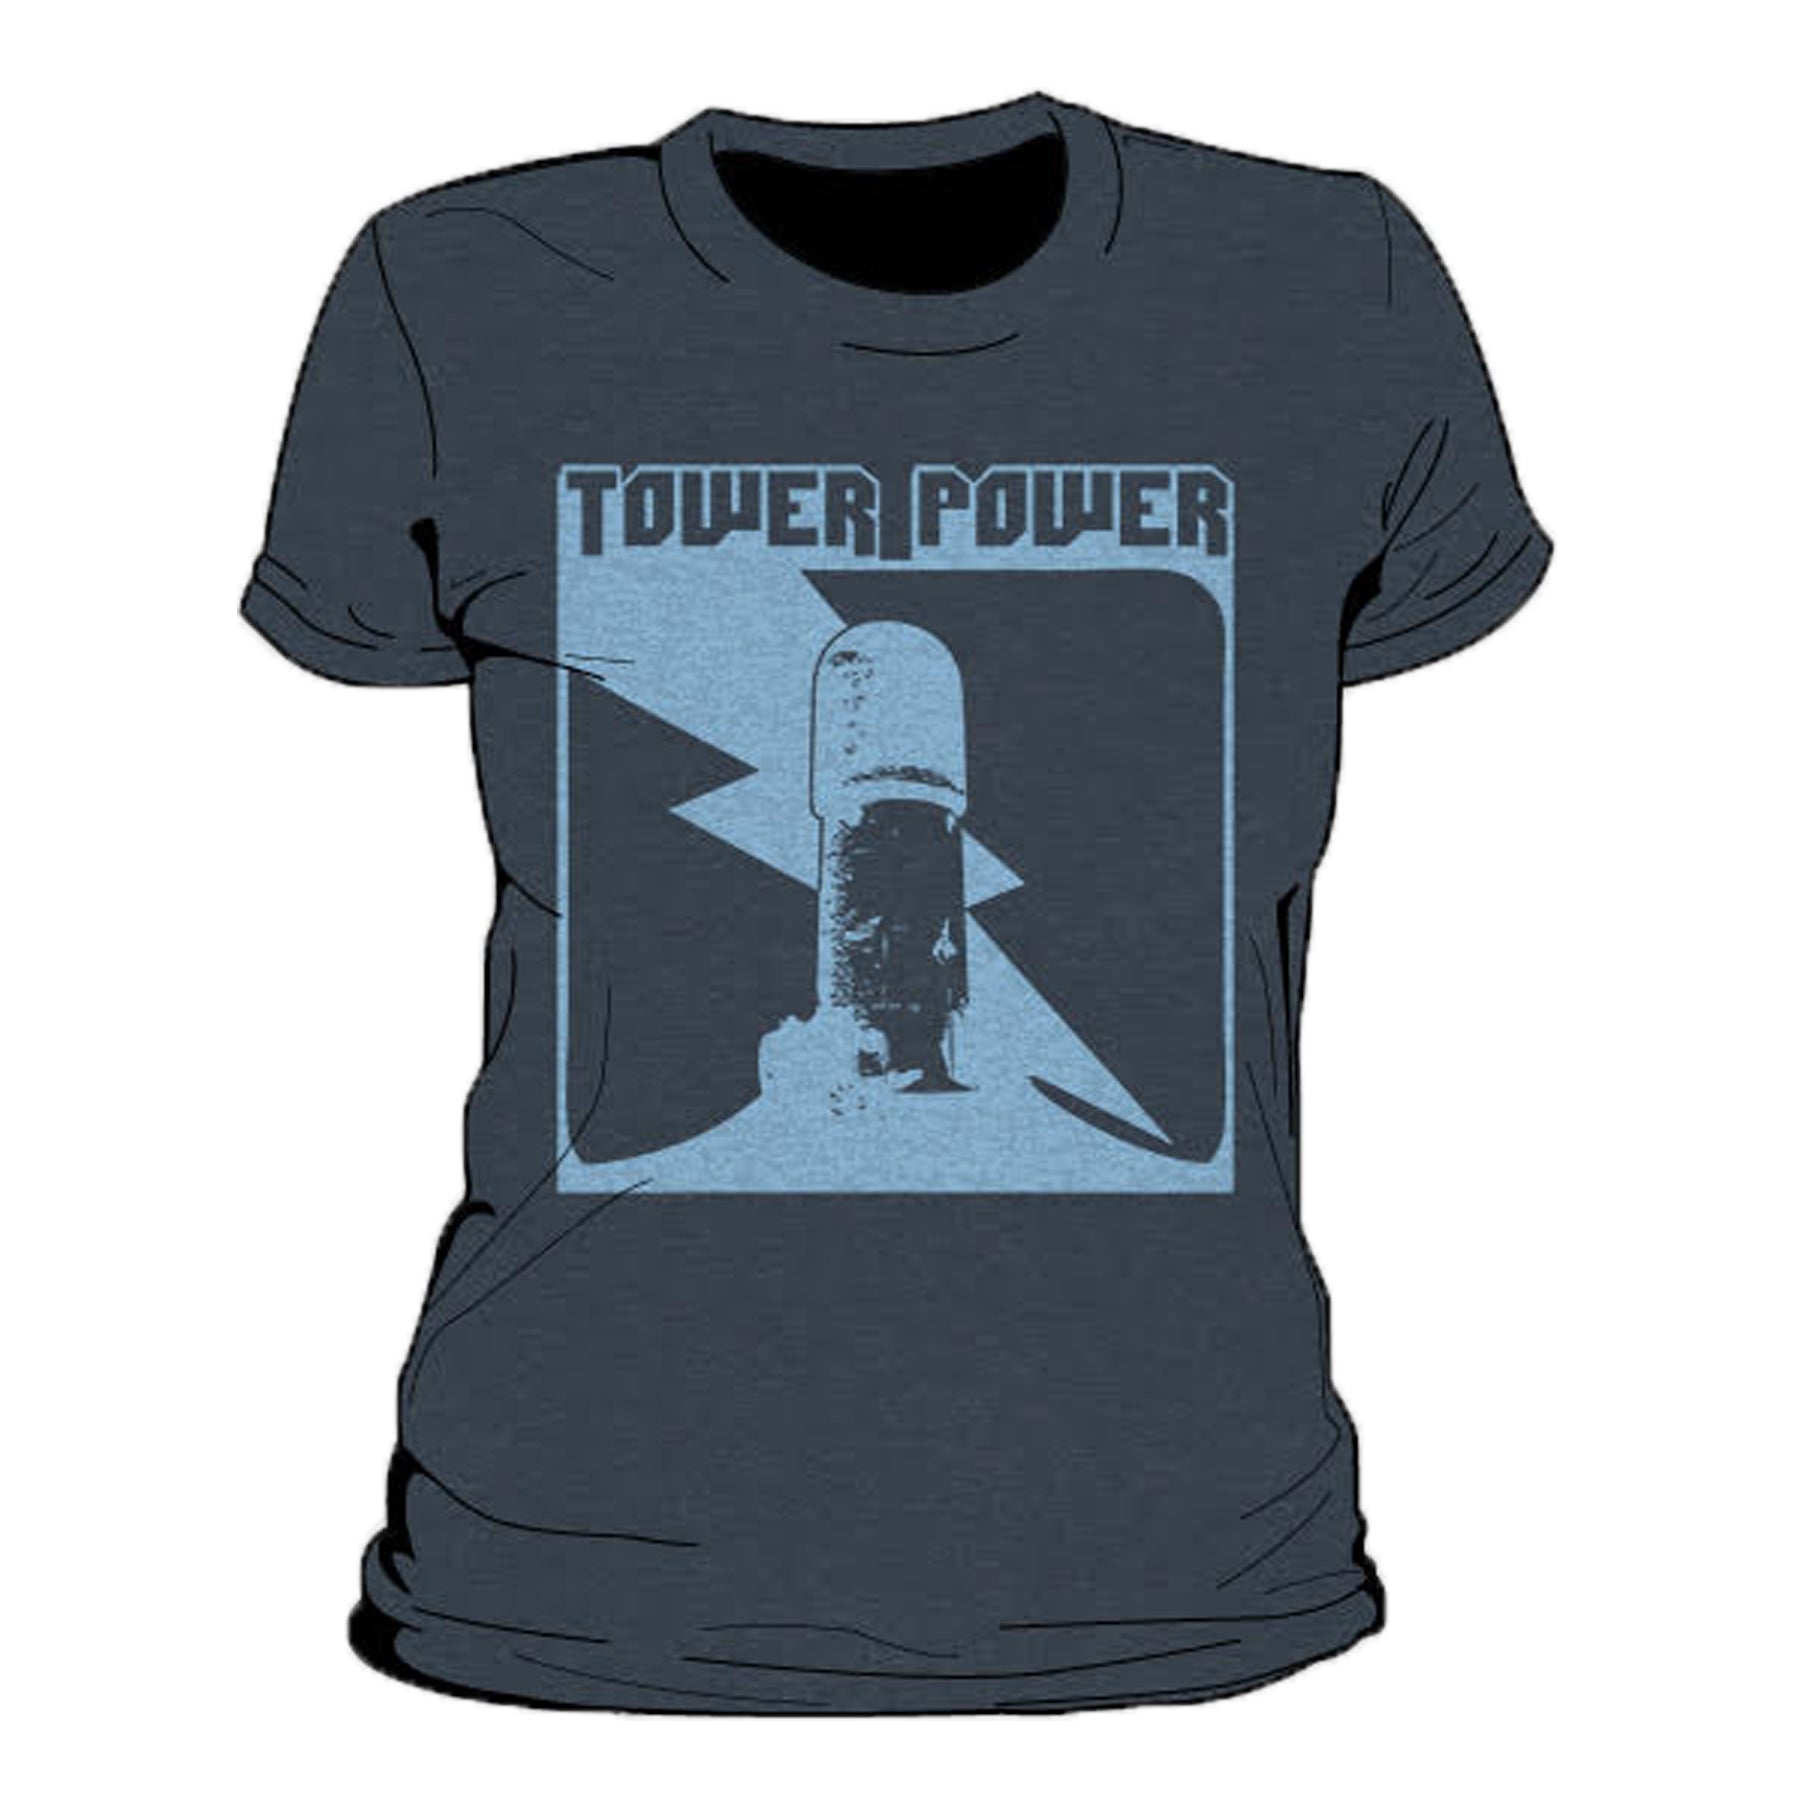 Tower Power Women's T-Shirt